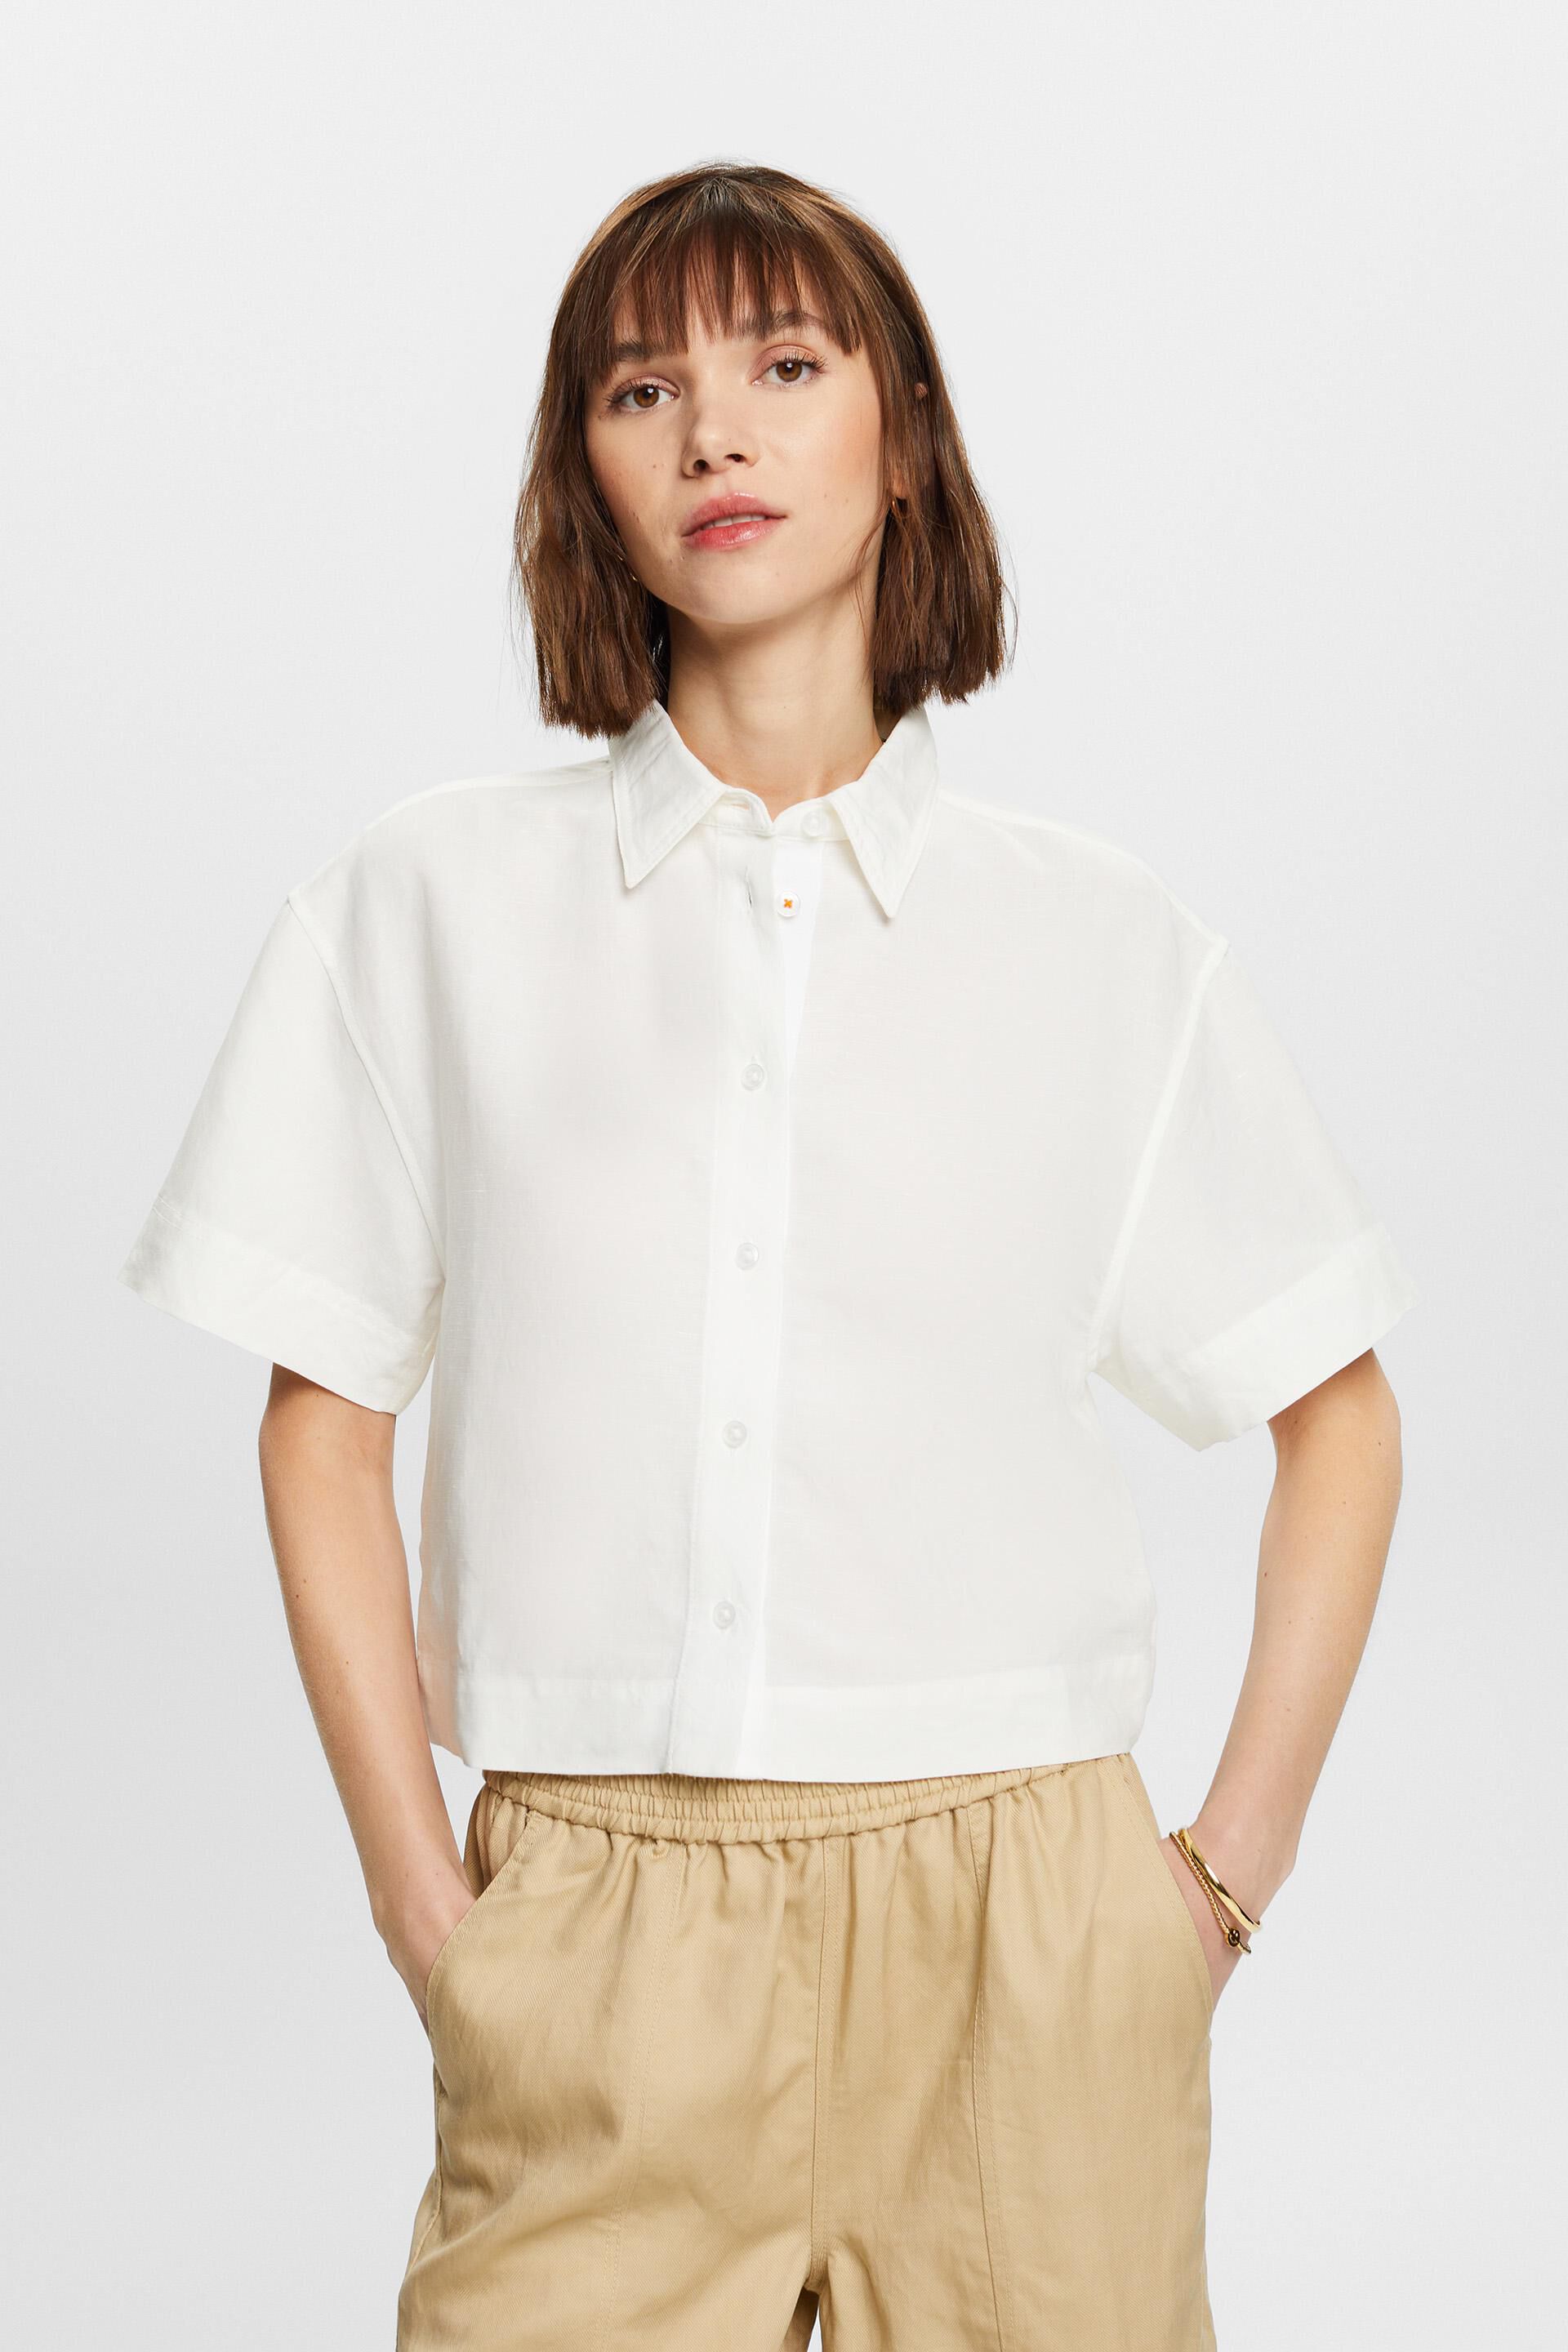 Esprit Damen Cropped shirt blouse, blend linen